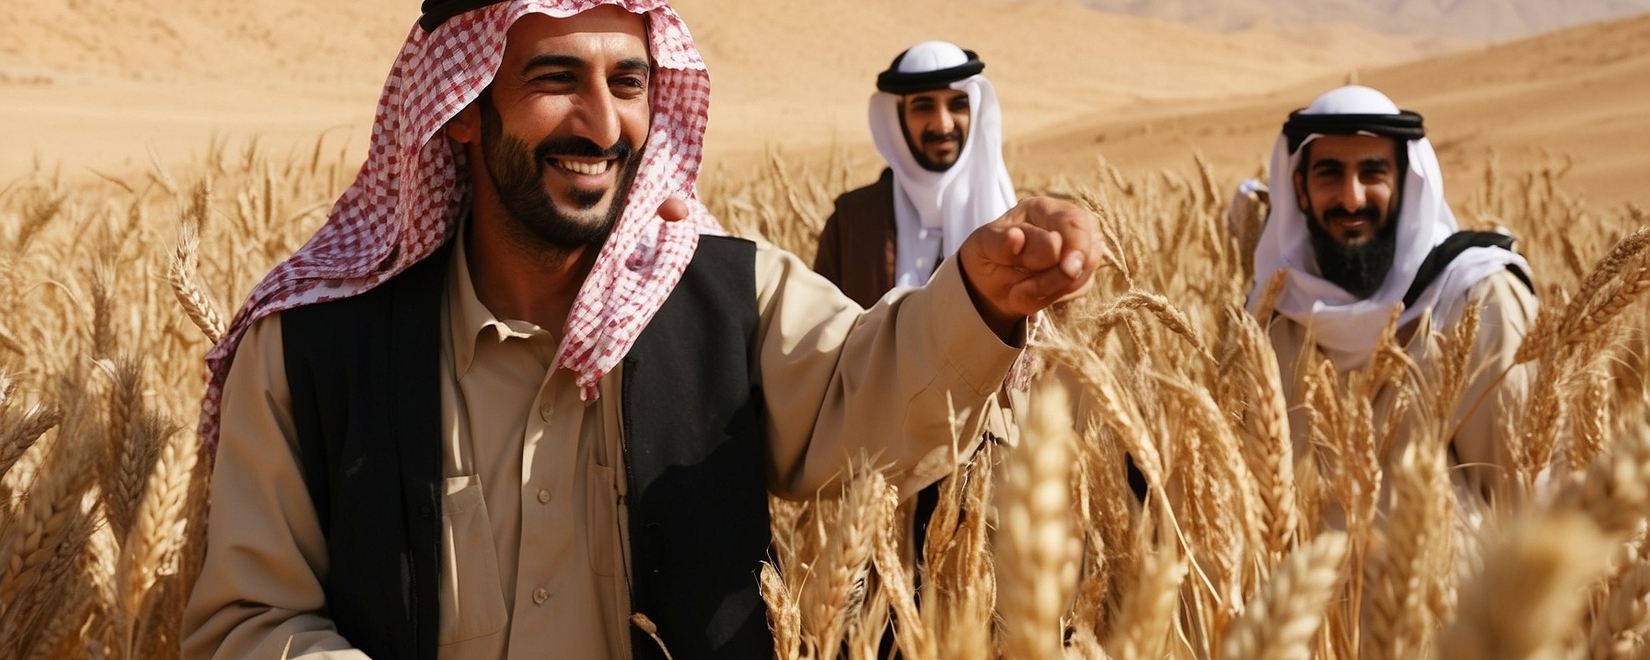 Иордания заняла свою позицию на рынке: 60 тыс. тонн пшеницы закуплено на тендере